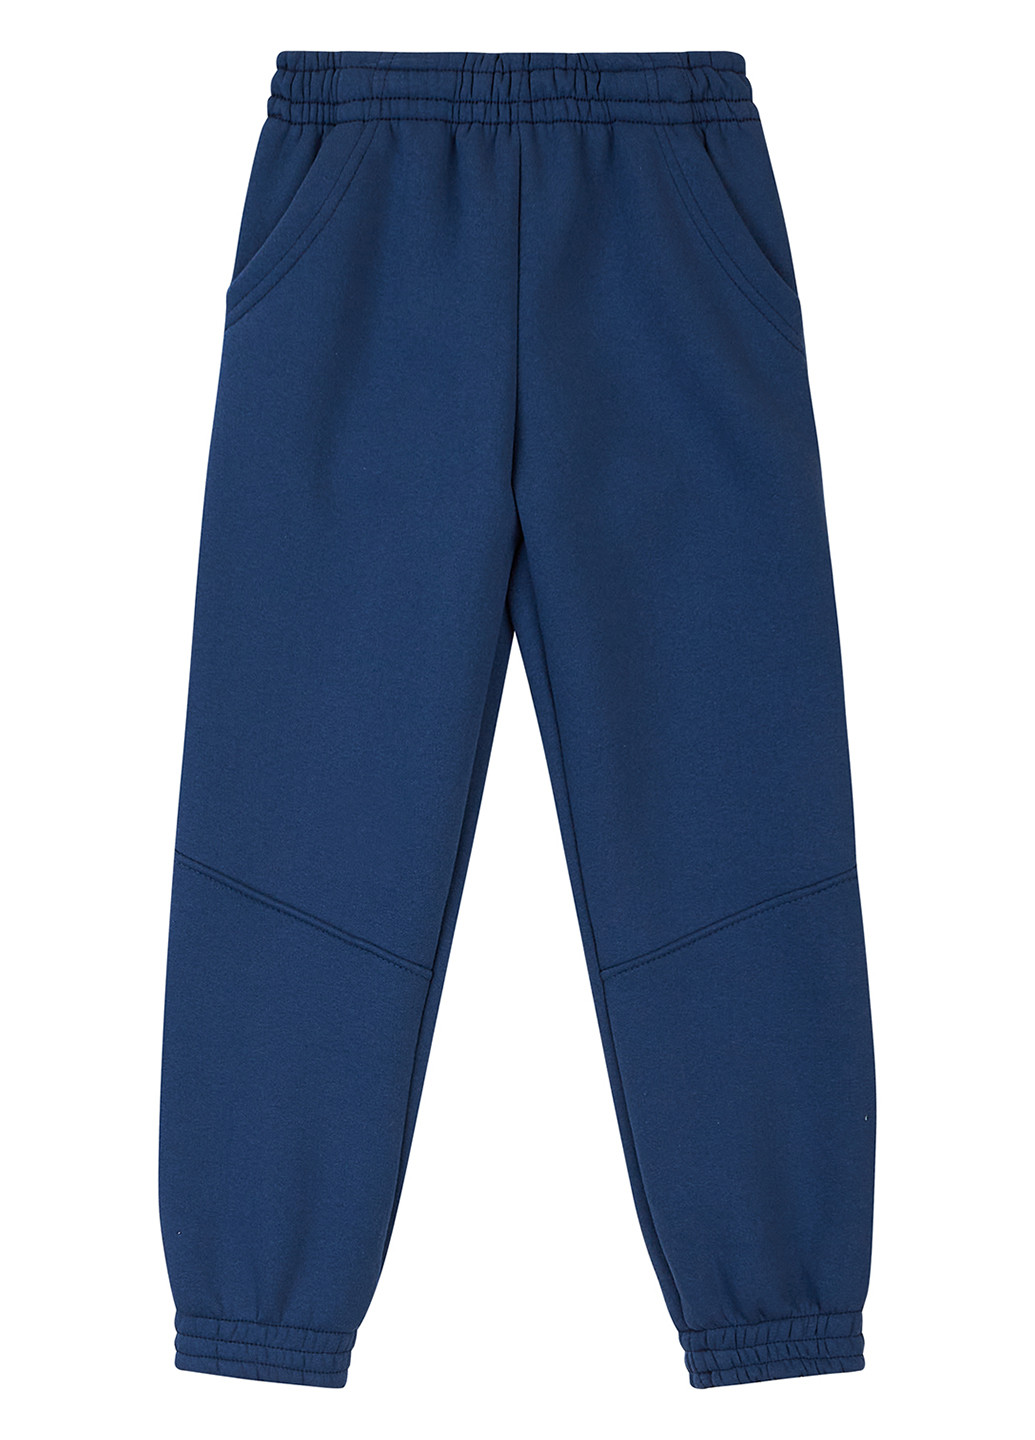 Синие спортивные демисезонные джоггеры брюки dexter's